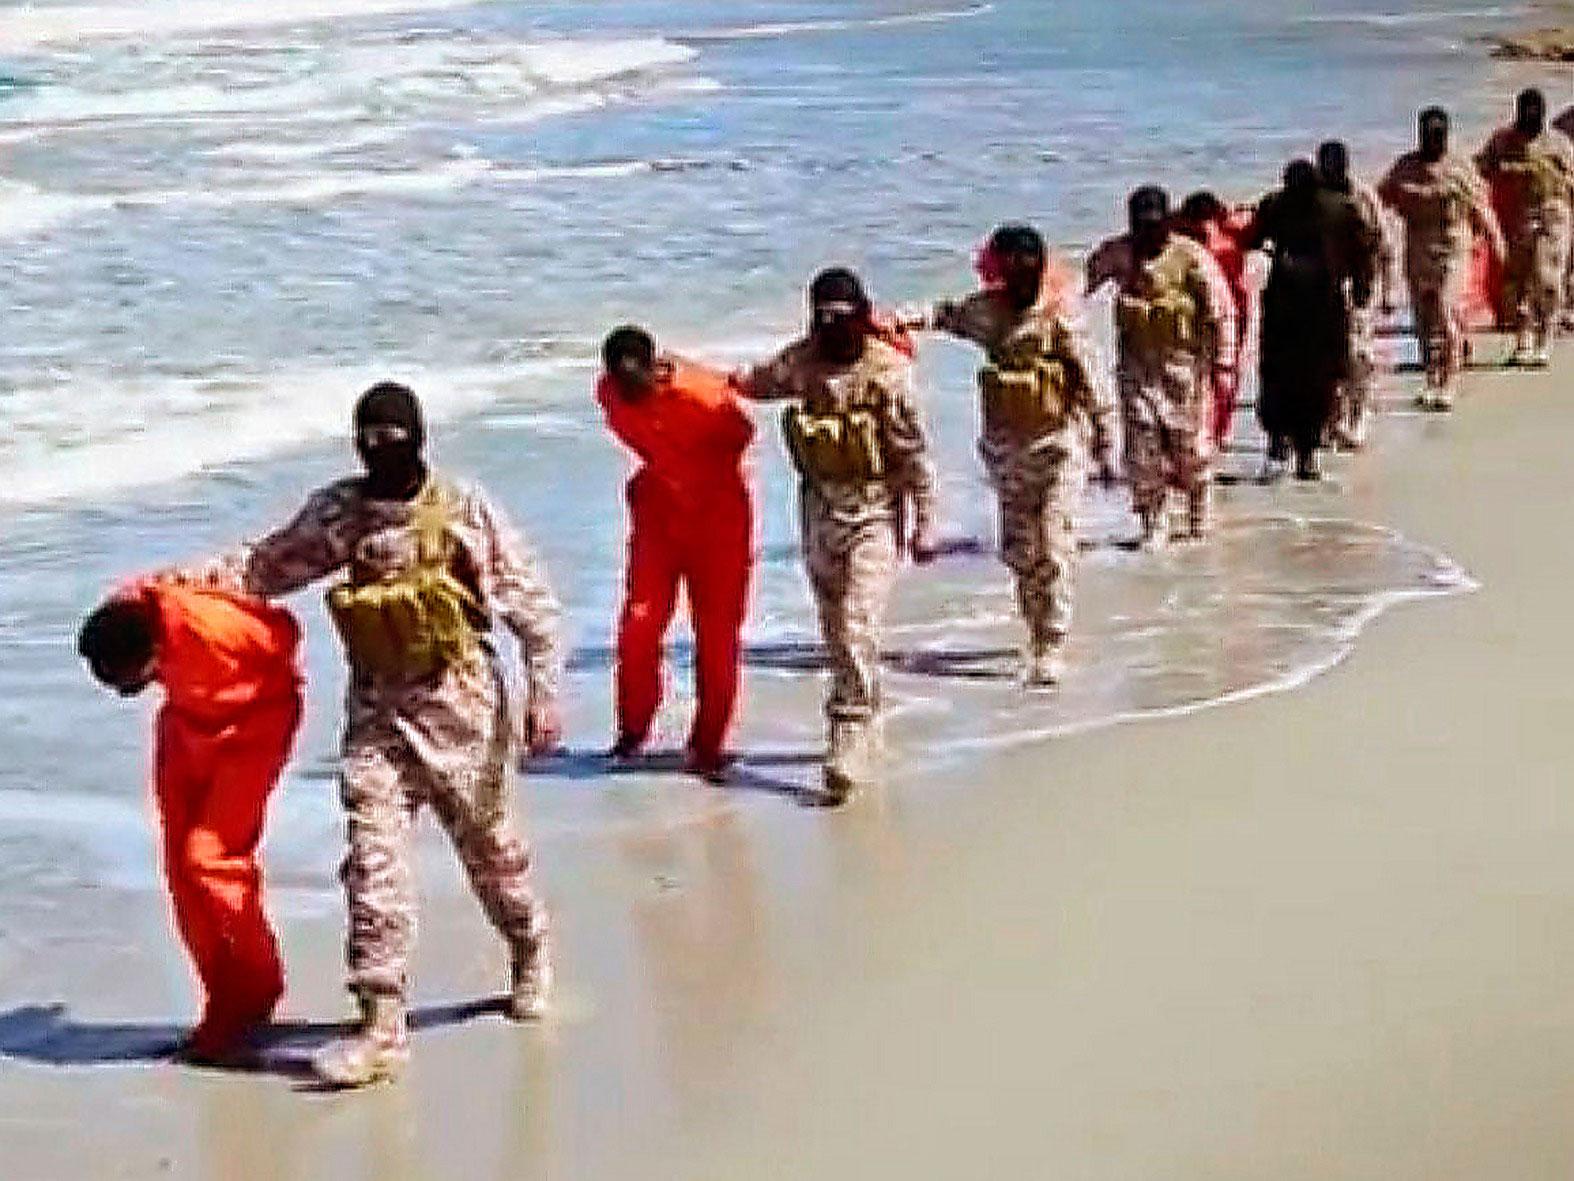 Mördande propaganda  Bild från en video som nyligen släppts av Islamiska staten sägs visa hur en grupp kristna fångar avrättas. Boken ”Islamiska staten” krossar flera myter om den fruktade terrororganisationen. Foto: AP